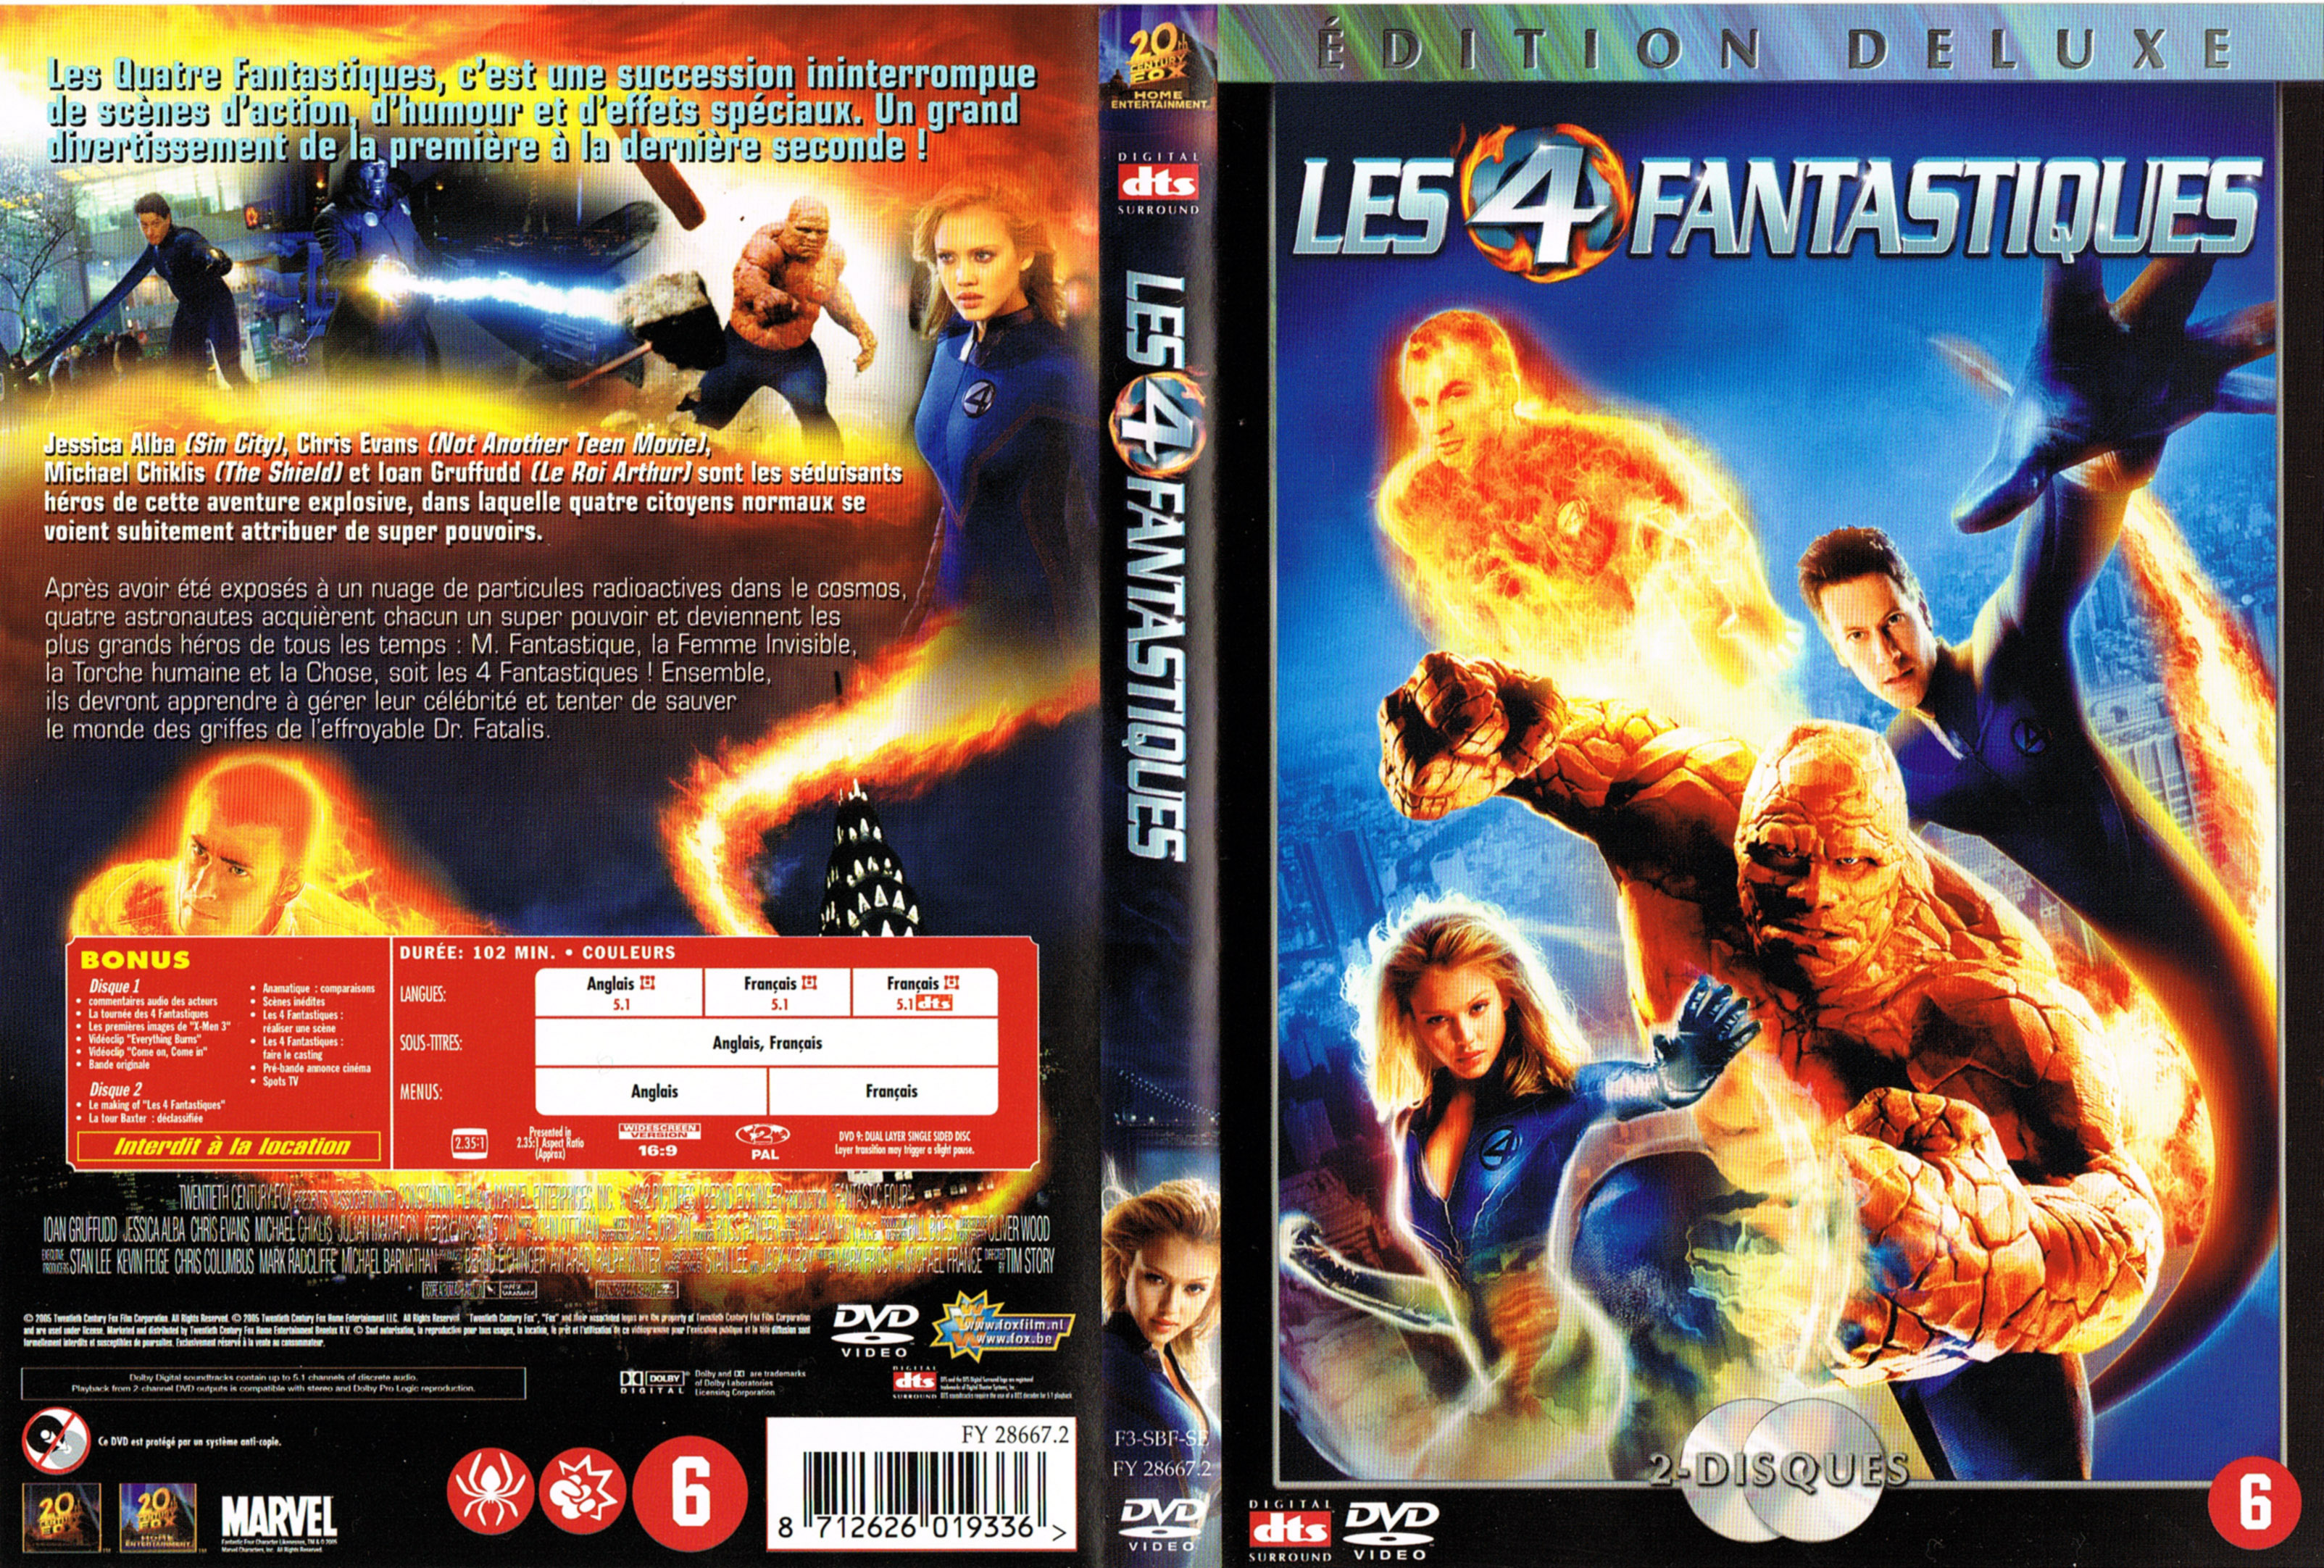 Jaquette DVD Les 4 fantastiques v5